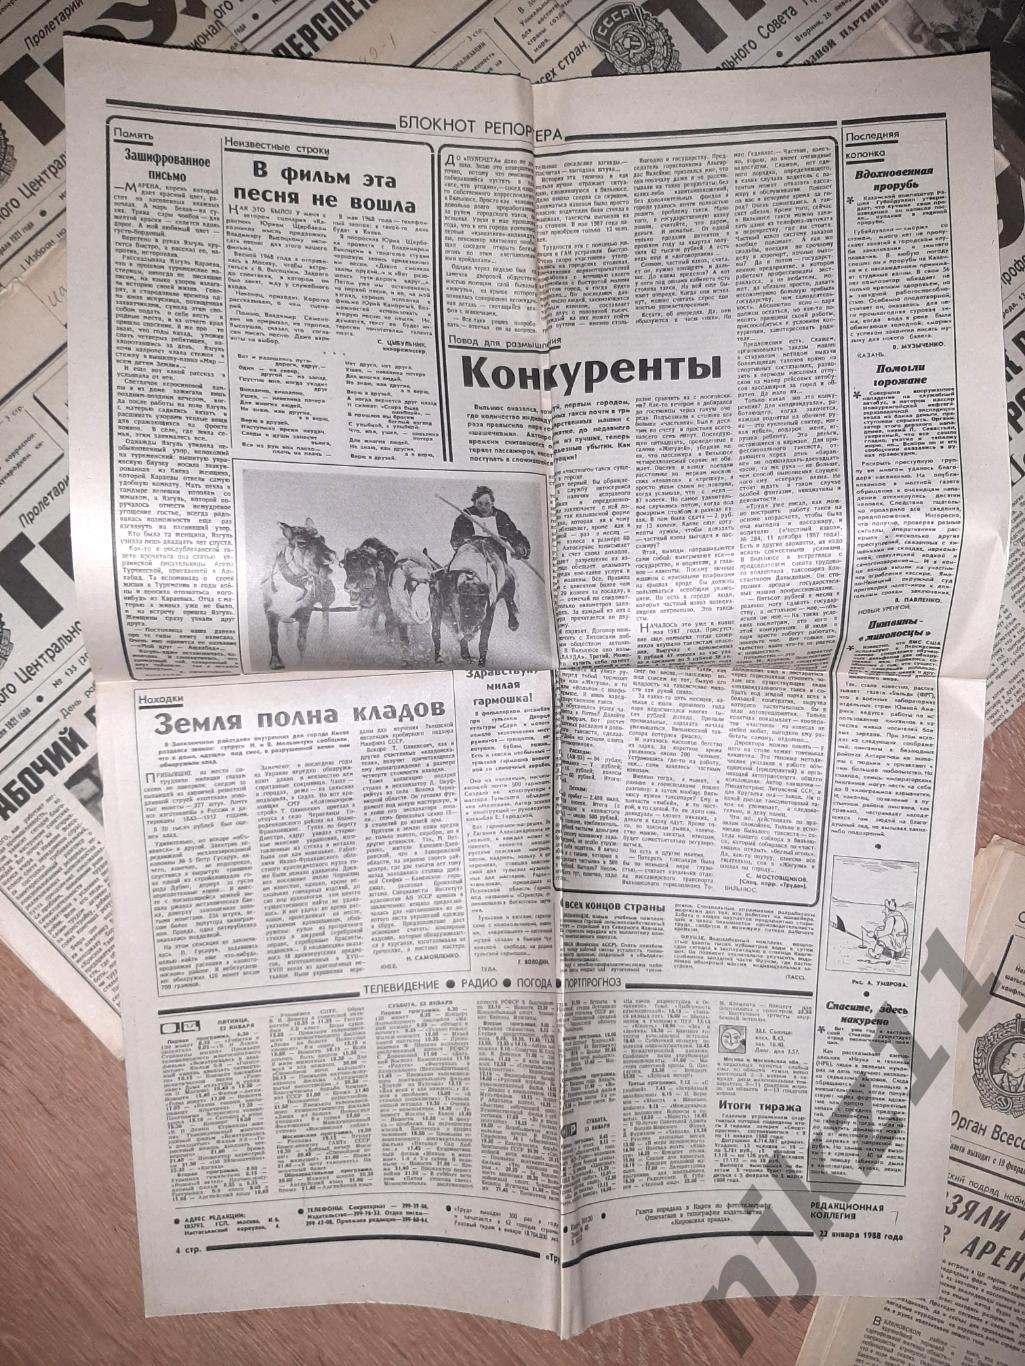 22 газеты Труд за 1988-89г. Есть ЧЕ 1988г по футболу, есть спорт 5